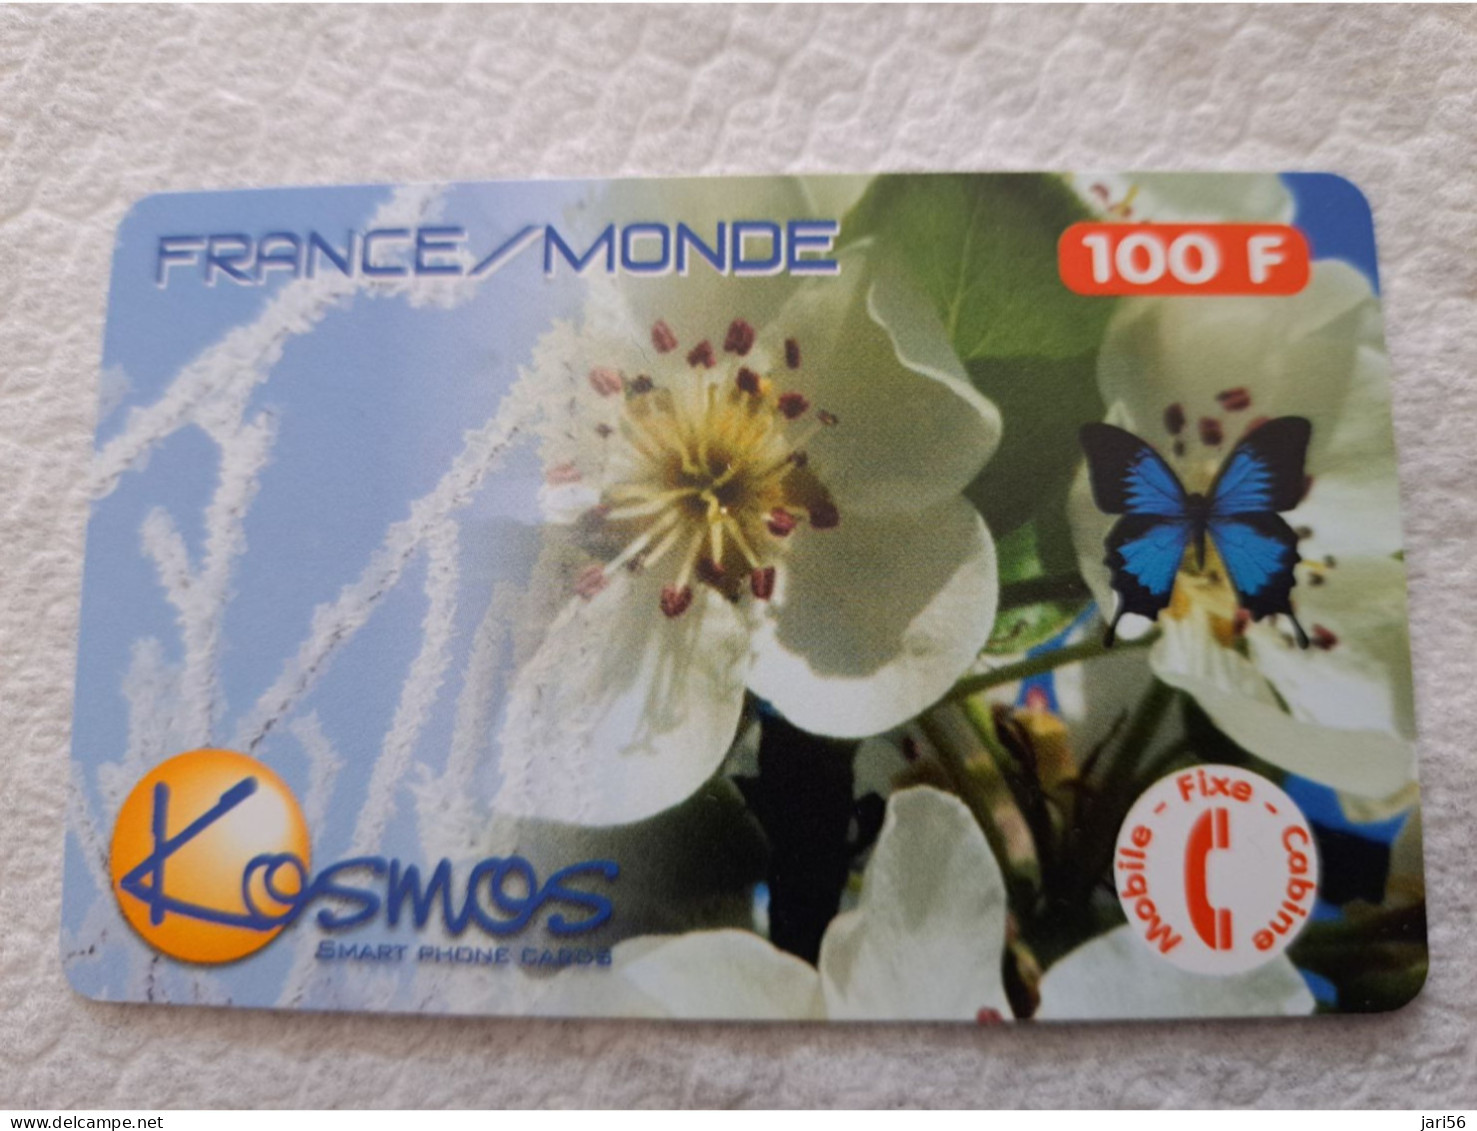 FRANCE/FRANKRIJK  100F// KOSMOS SMART/ FRANCE MONDE  /BUTTERFLY /FLOWER /   PREPAID  / USED   ** 14546** - Voorafbetaalde Kaarten: Gsm